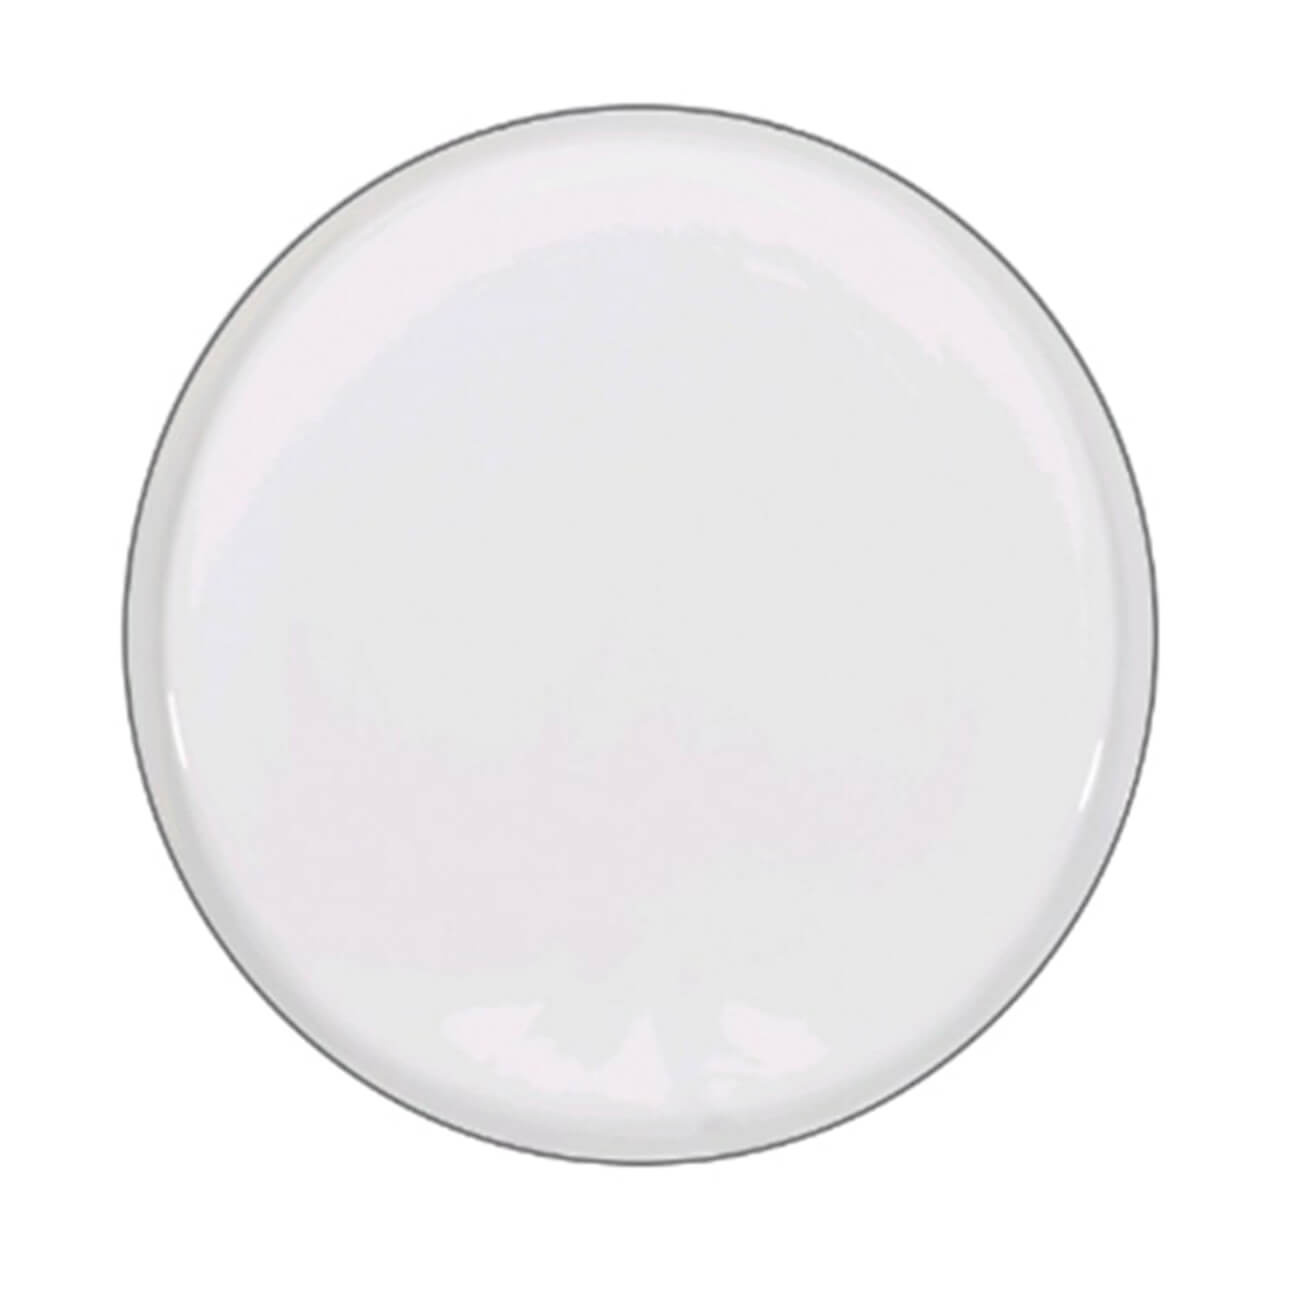 Тарелка десертная, 20 см, 2 шт, фарфор F, белая, Ideal silver изображение № 1